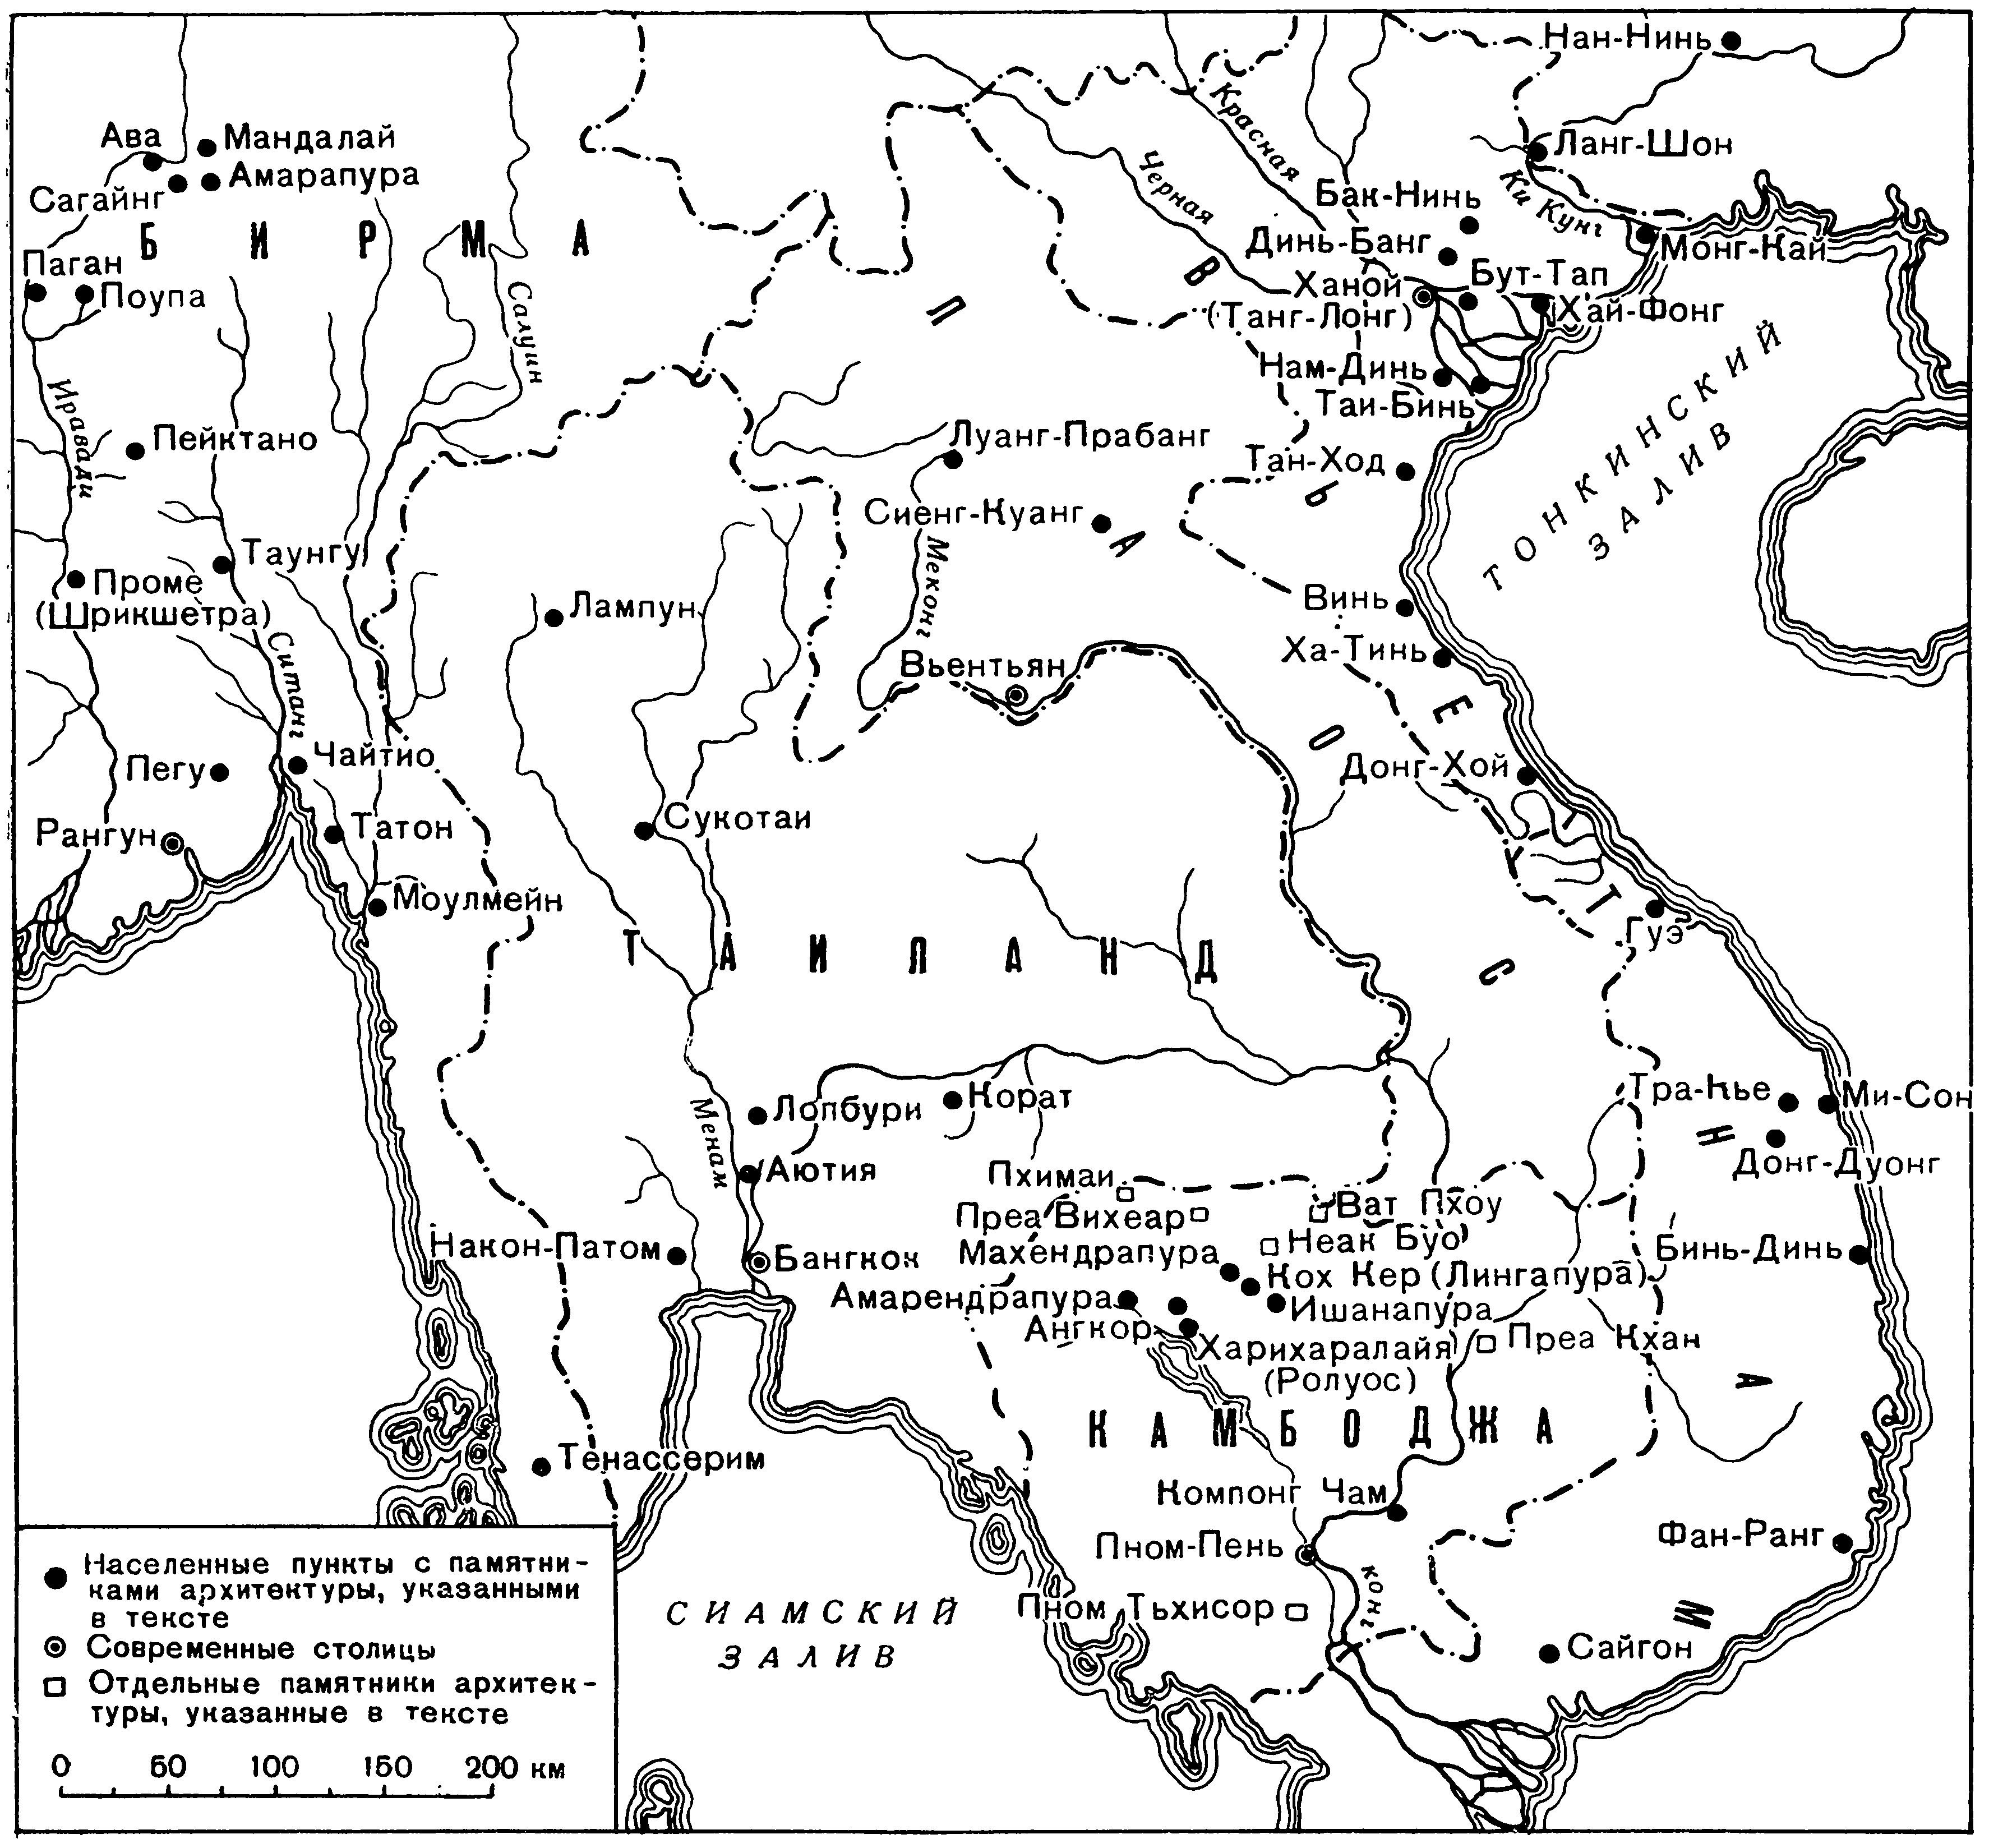 Схематическая карта Камбоджи, Бирмы, Таиланда, Лаоса и Вьетнама